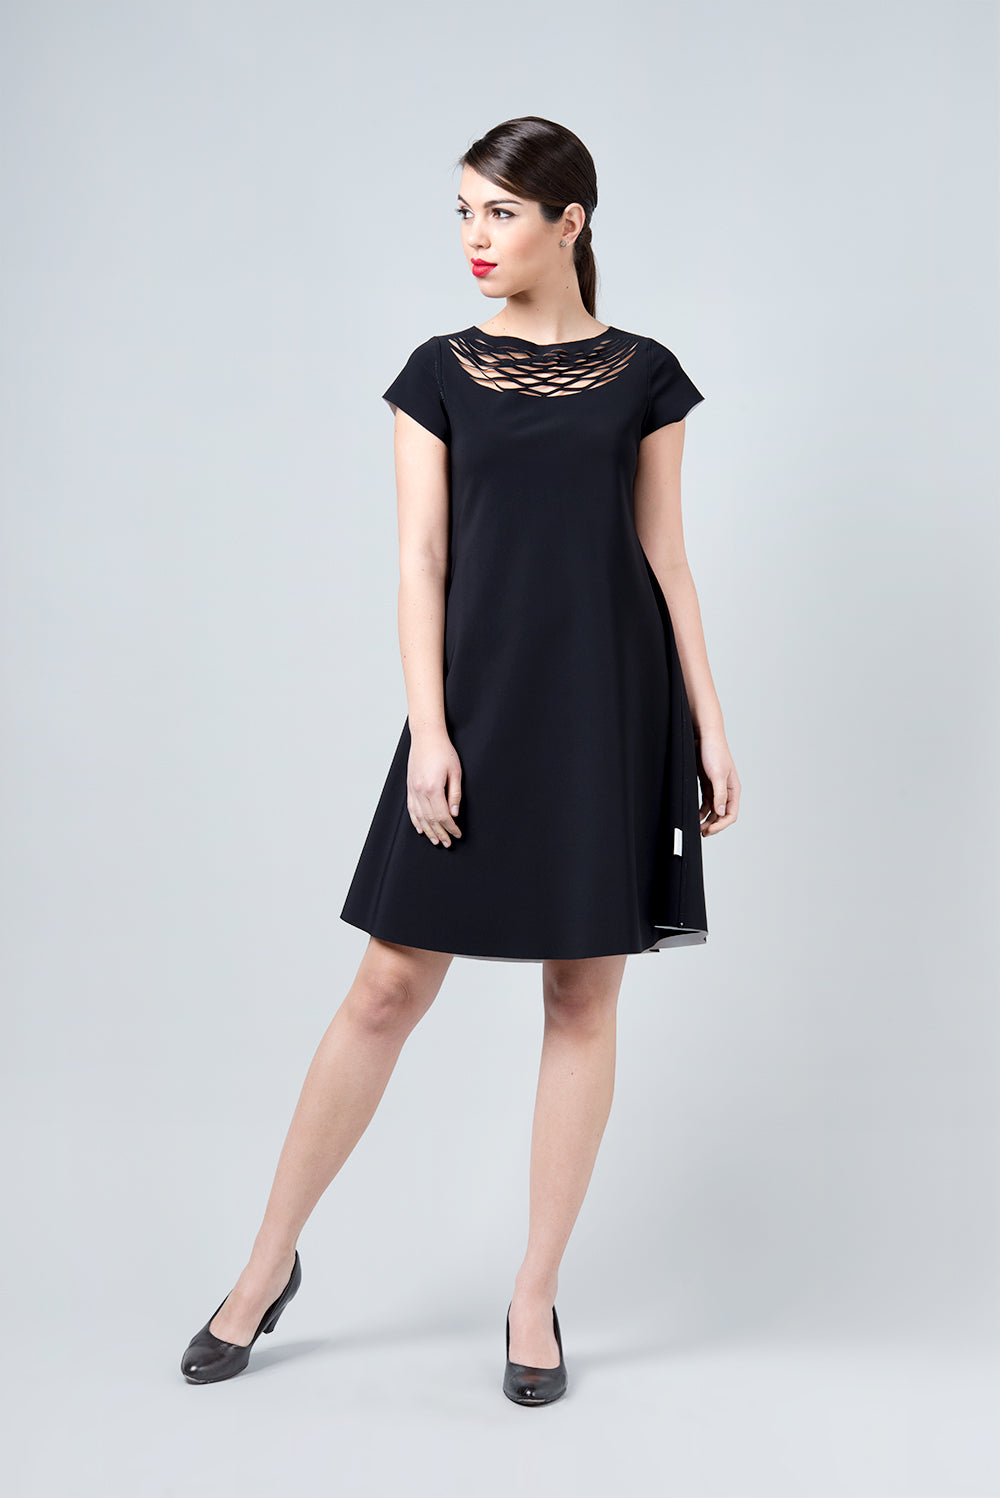 שמלה דו צדדית שחור לבן - שמלת אומגה אינסייד אאוט